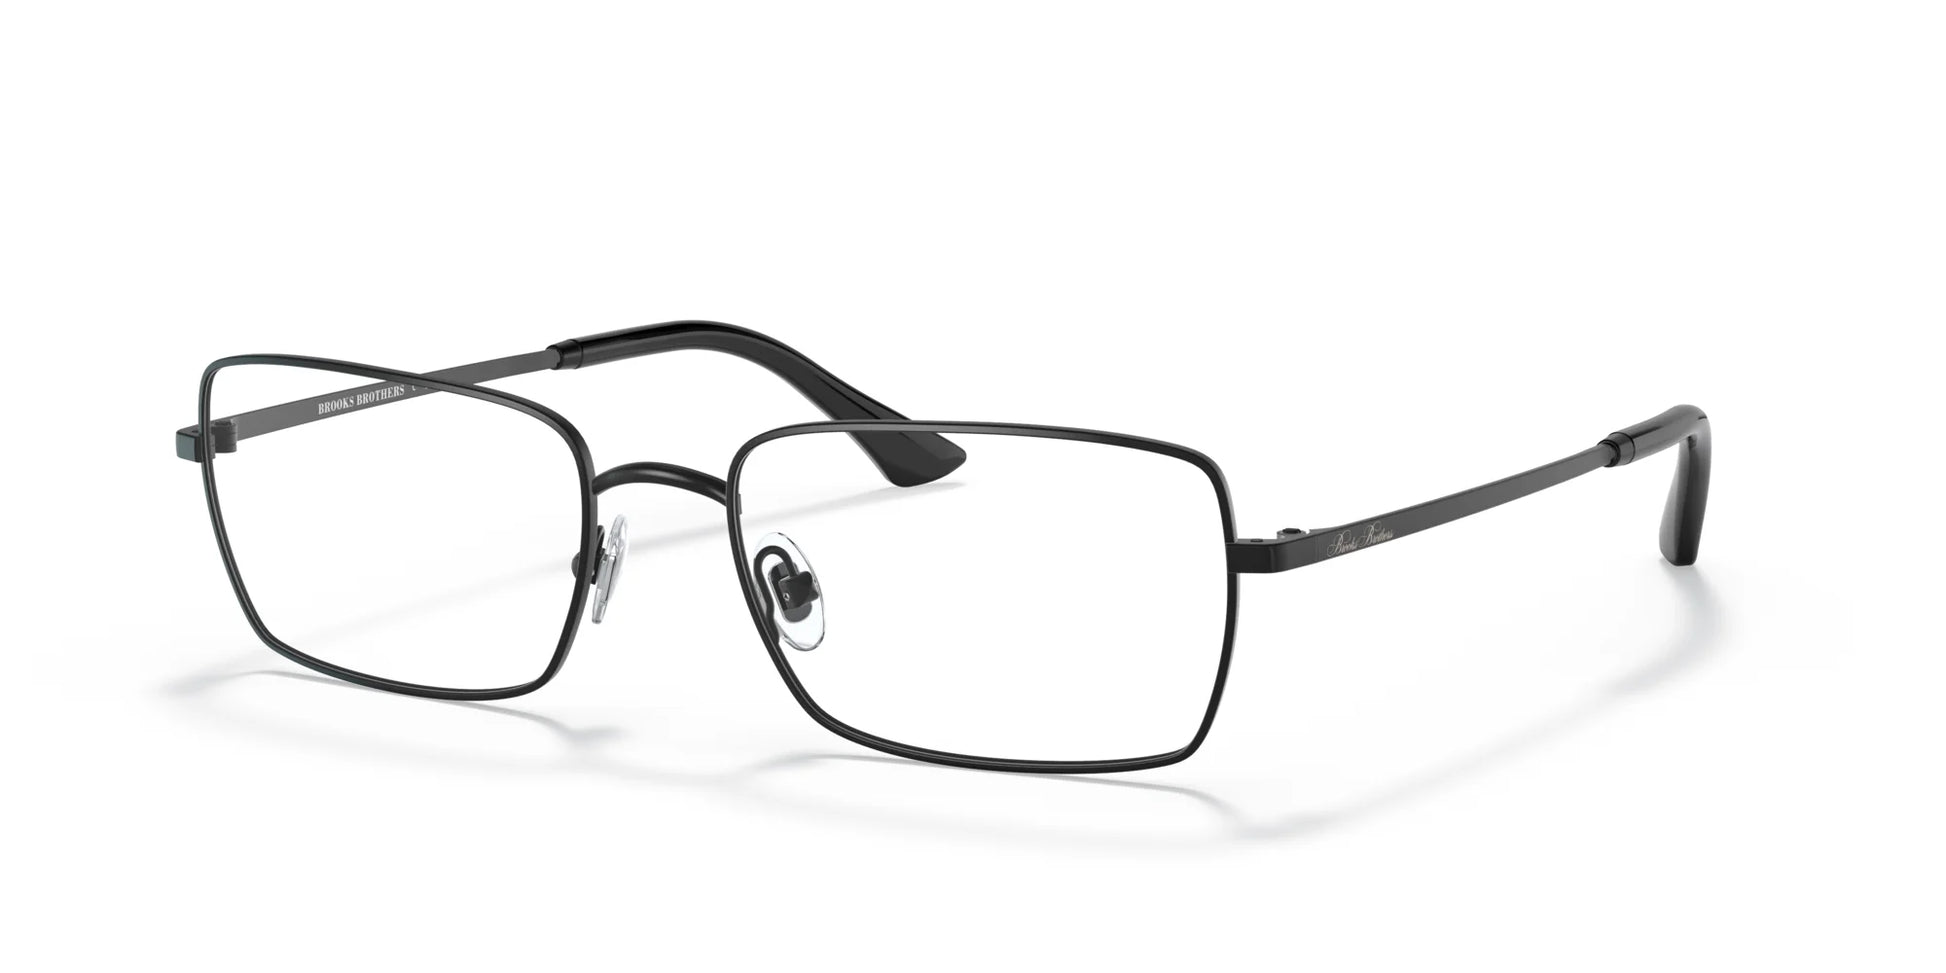 Brooks Brothers BB1092 Eyeglasses Satin Black